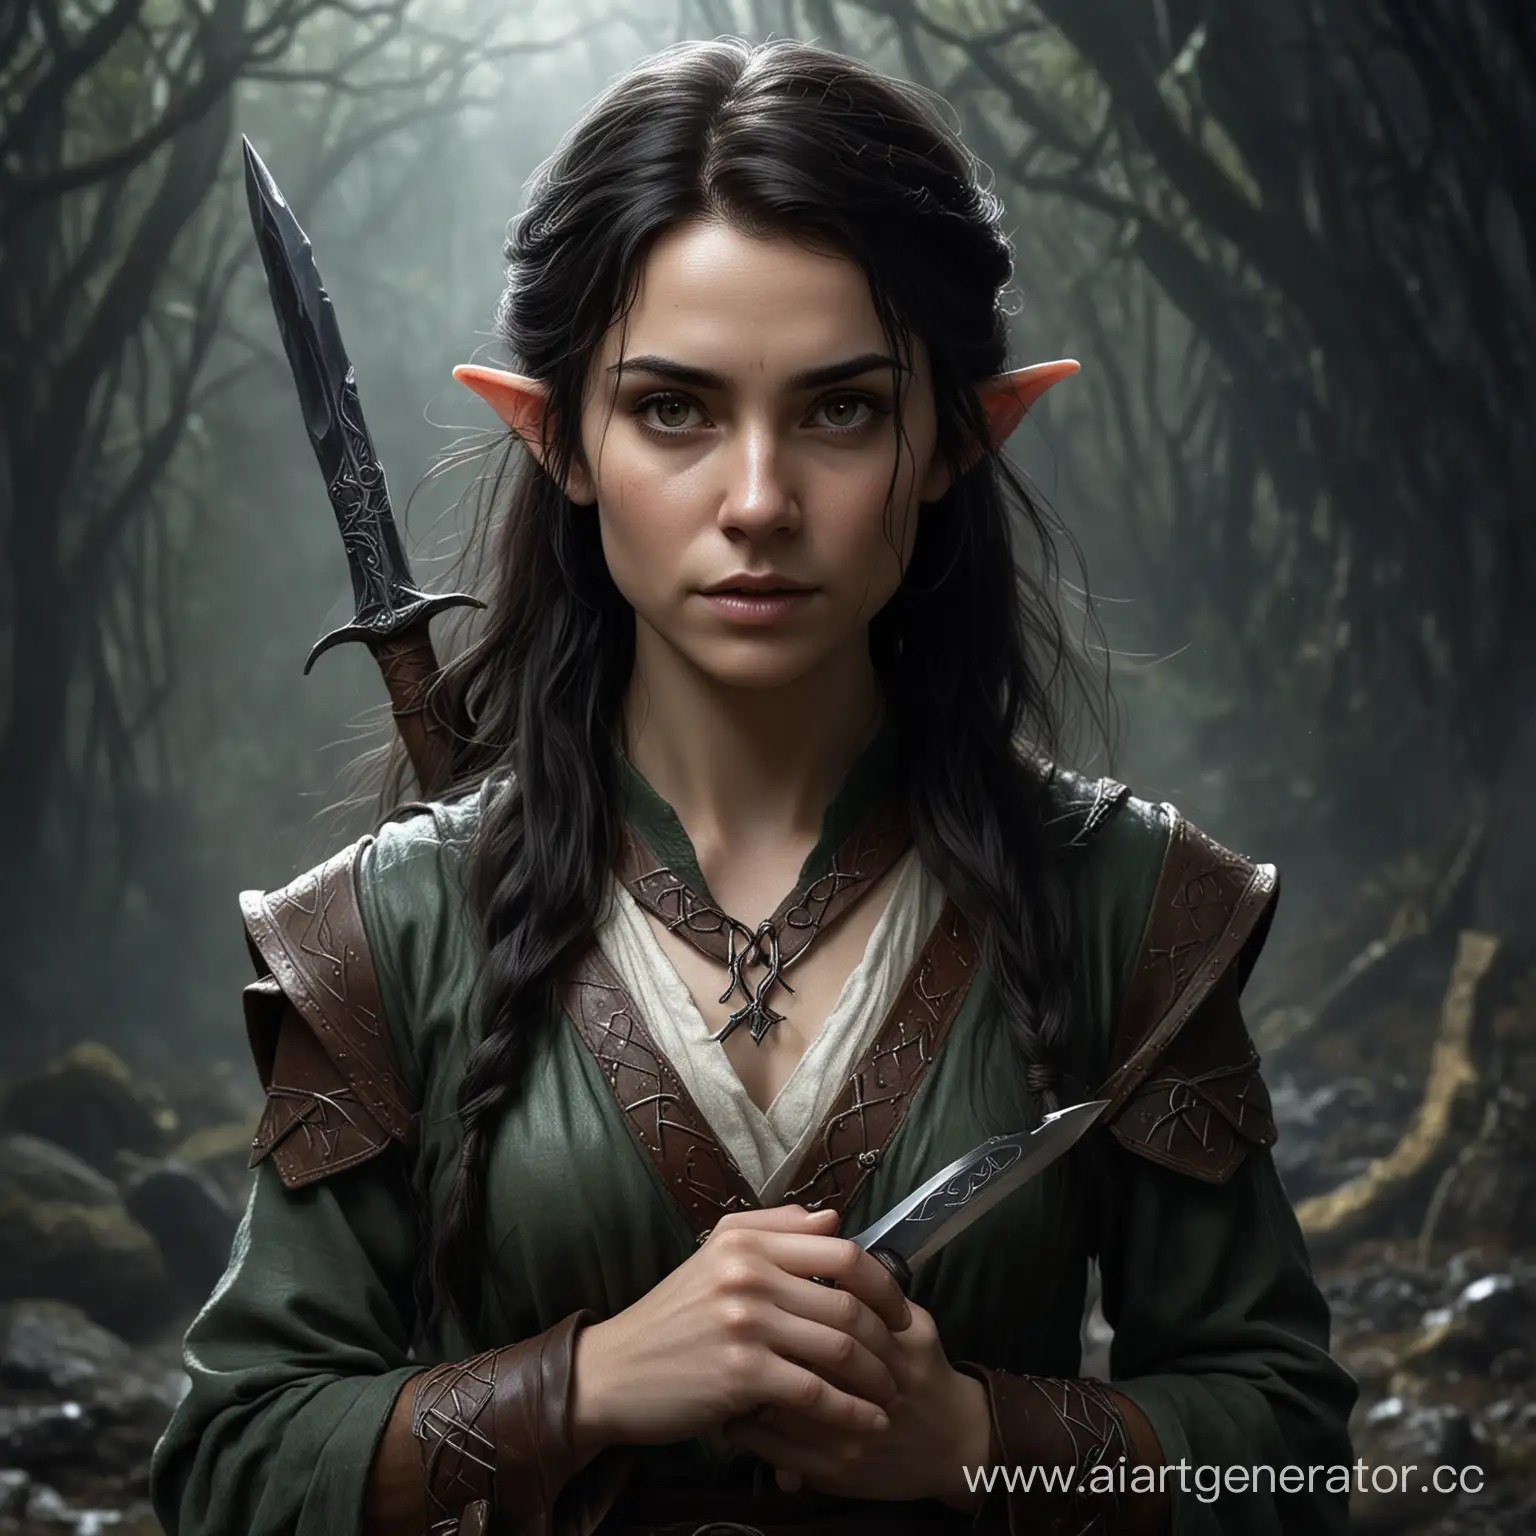 Mystic-Woman-of-Fantasy-Dark-Hair-Runes-and-Dark-Magic